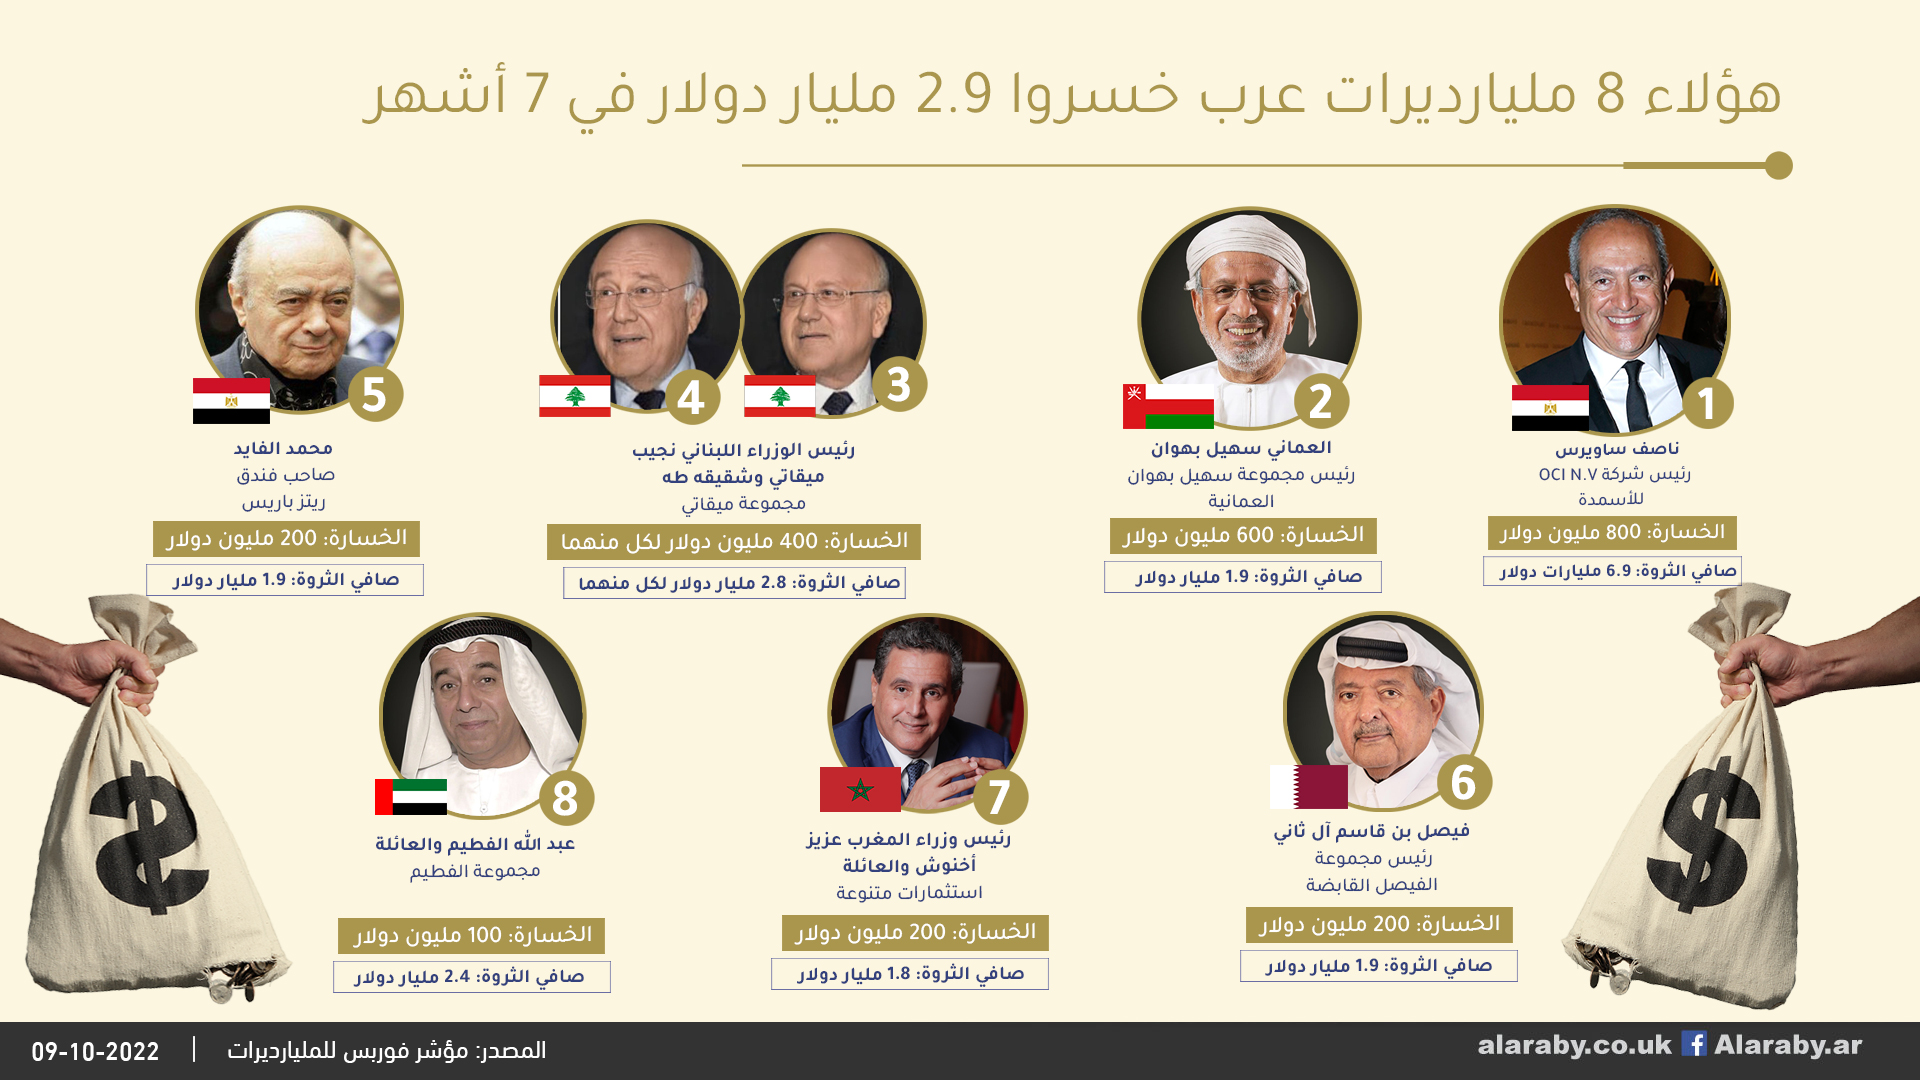 هؤلاء 8 مليارديرات عرب خسروا 2.9 مليار دولار في 7 أشهر